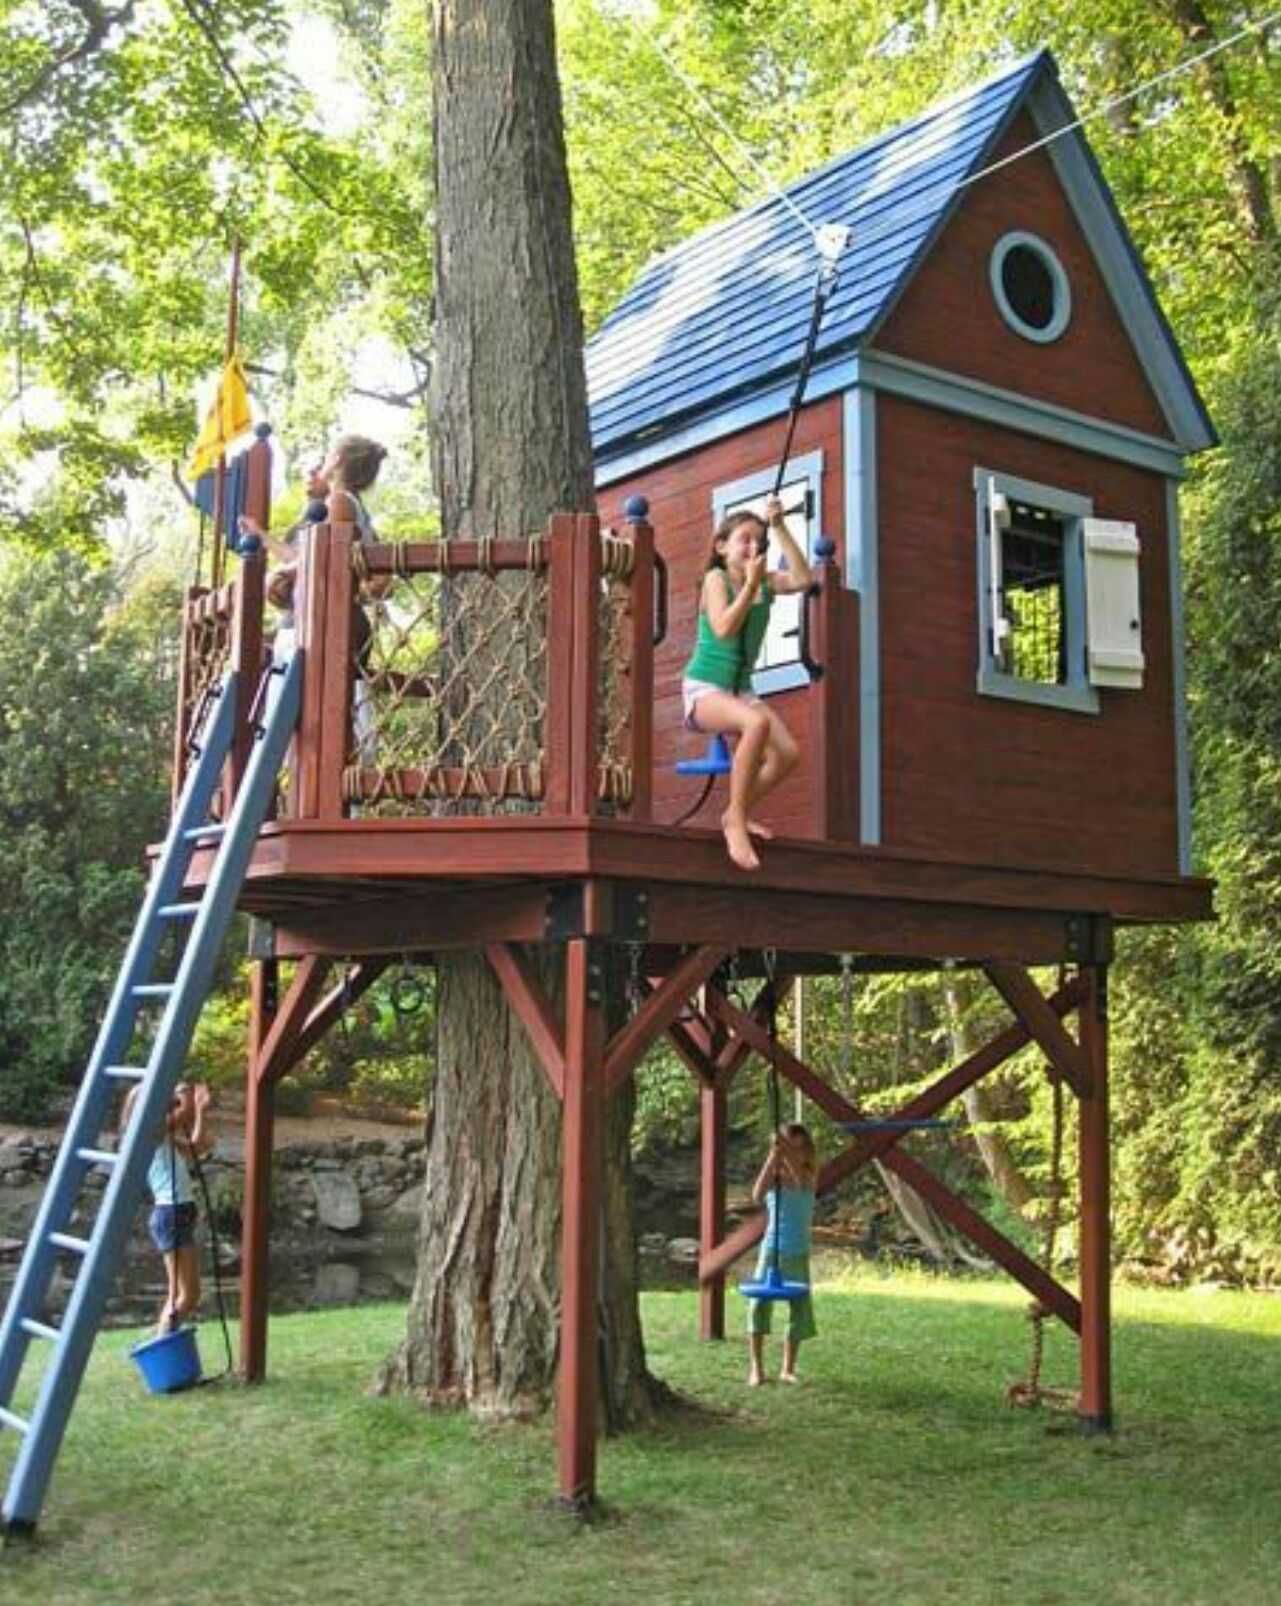 Domek na drzewie, domek dla dzieci, plac zabaw. Unikalny projekt